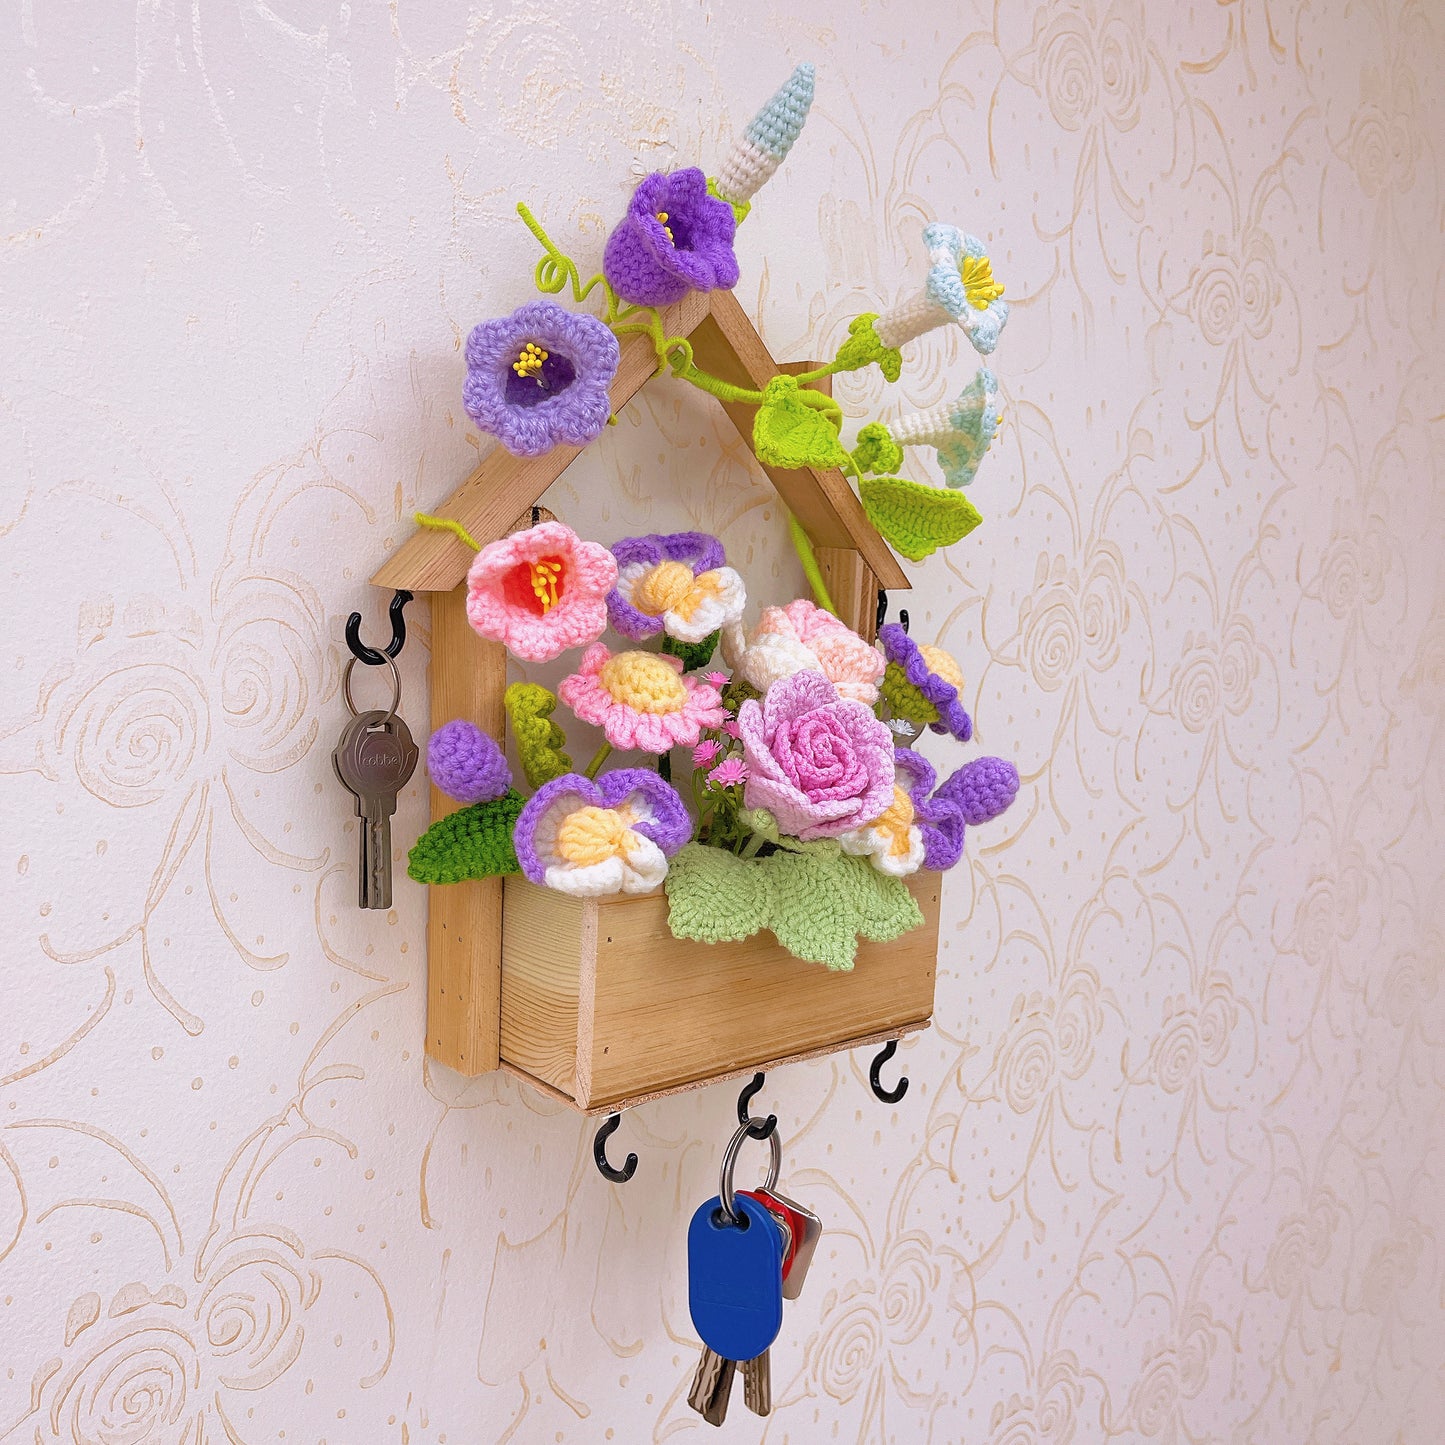 Handgefertigter Schlüsselhalter aus Holz als Wanddekoration mit floralem Hakendesign – rustikale Heimdekoration – perfekt für Eingangsbereiche und Geschenke